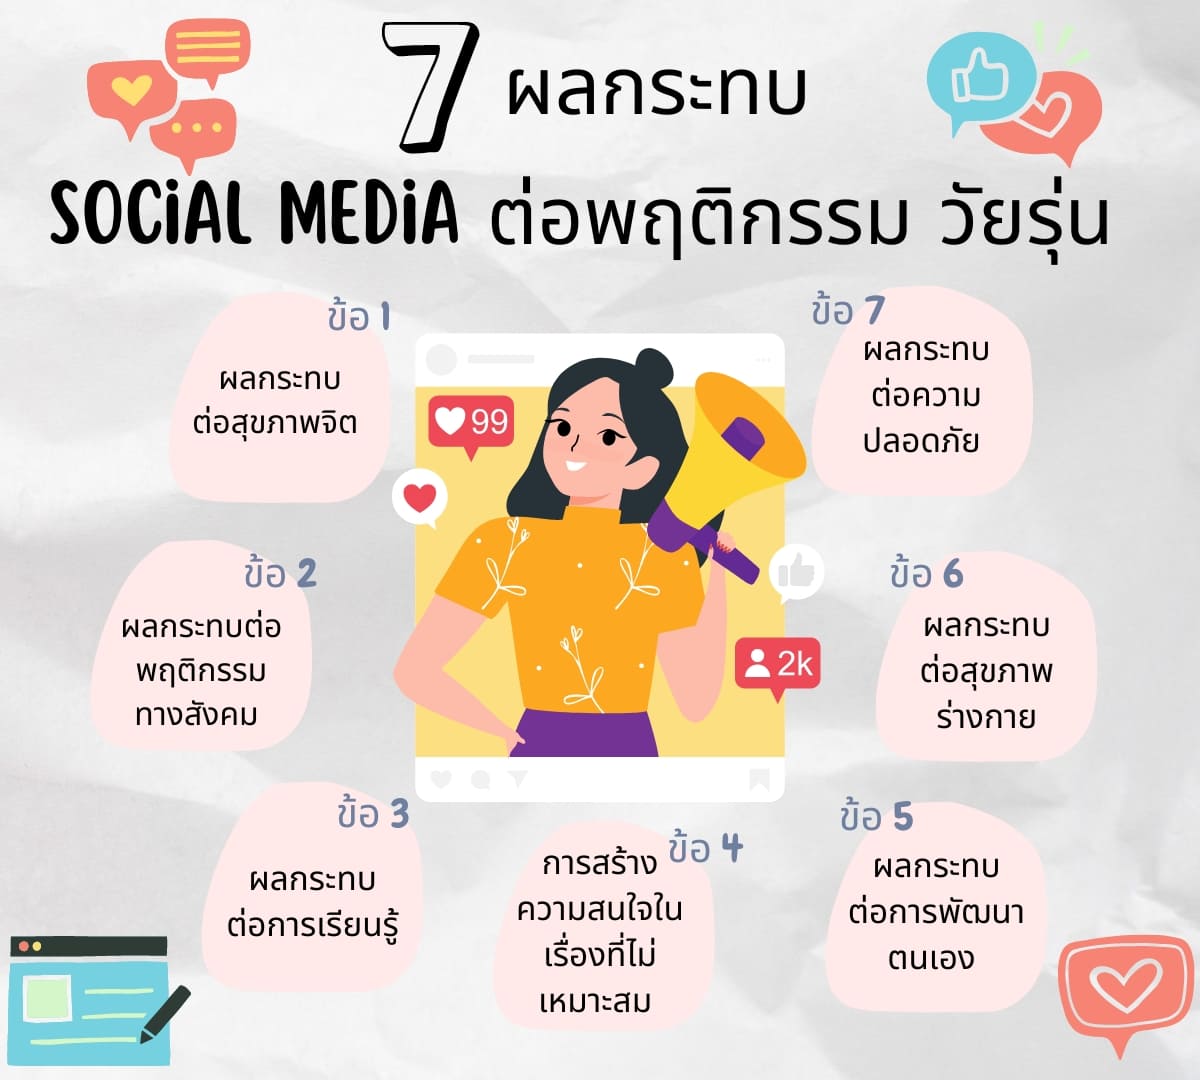 7 ผลกระทบ social media